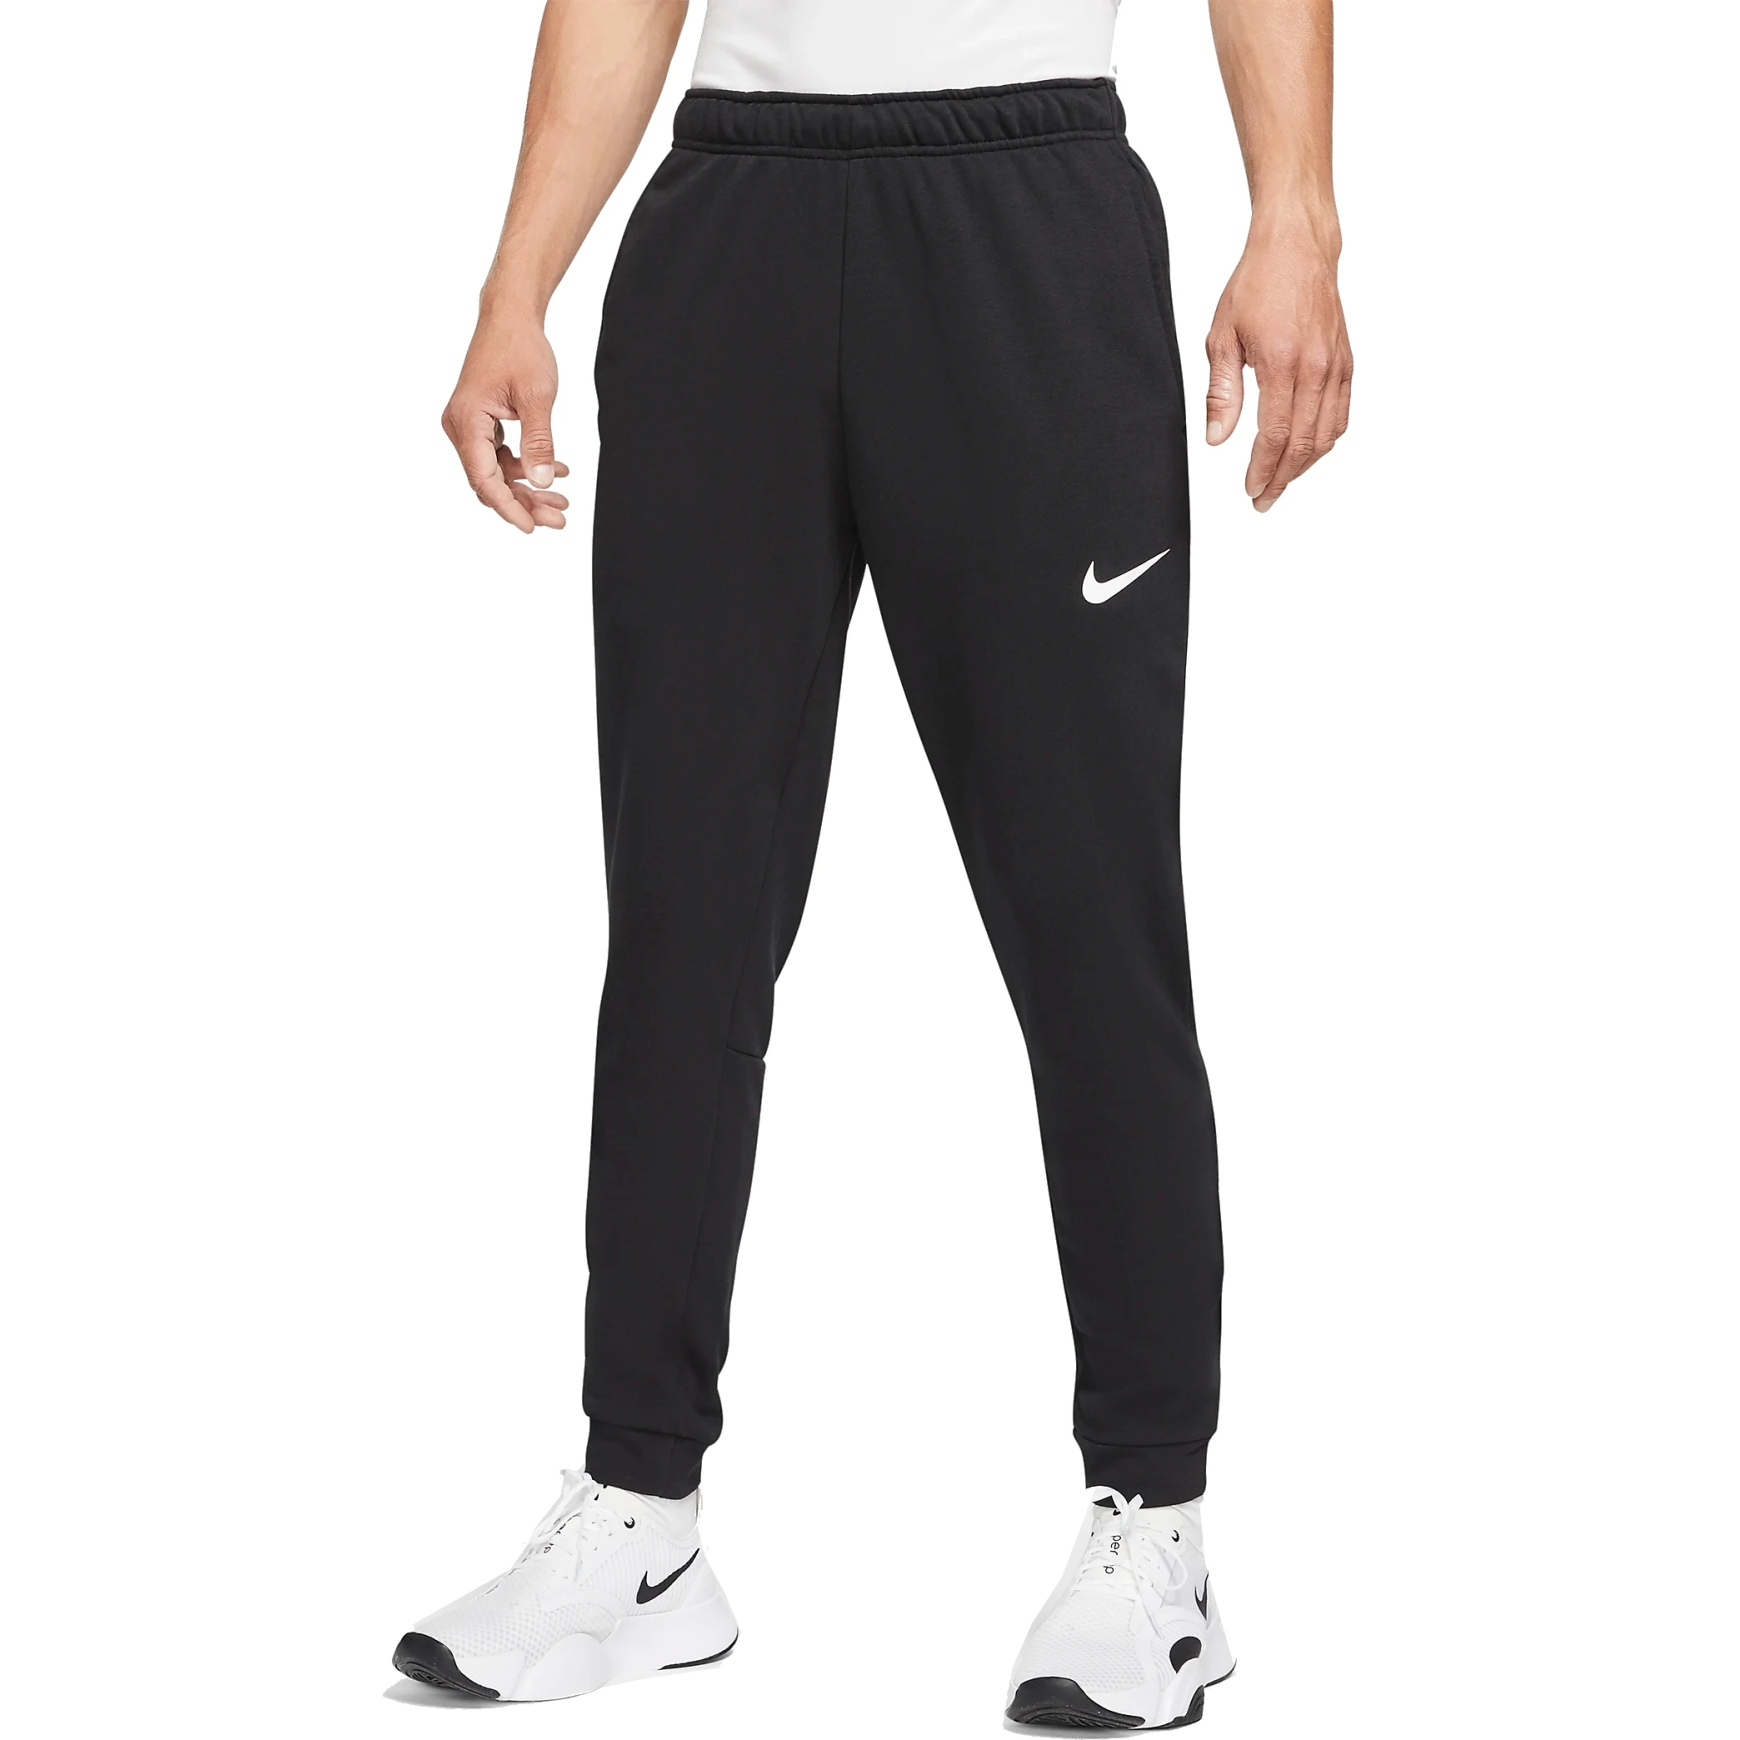 Immagine prodotto da Nike Pantaloni Uomo - Dry Tapered - negro/blanco CZ6379-010